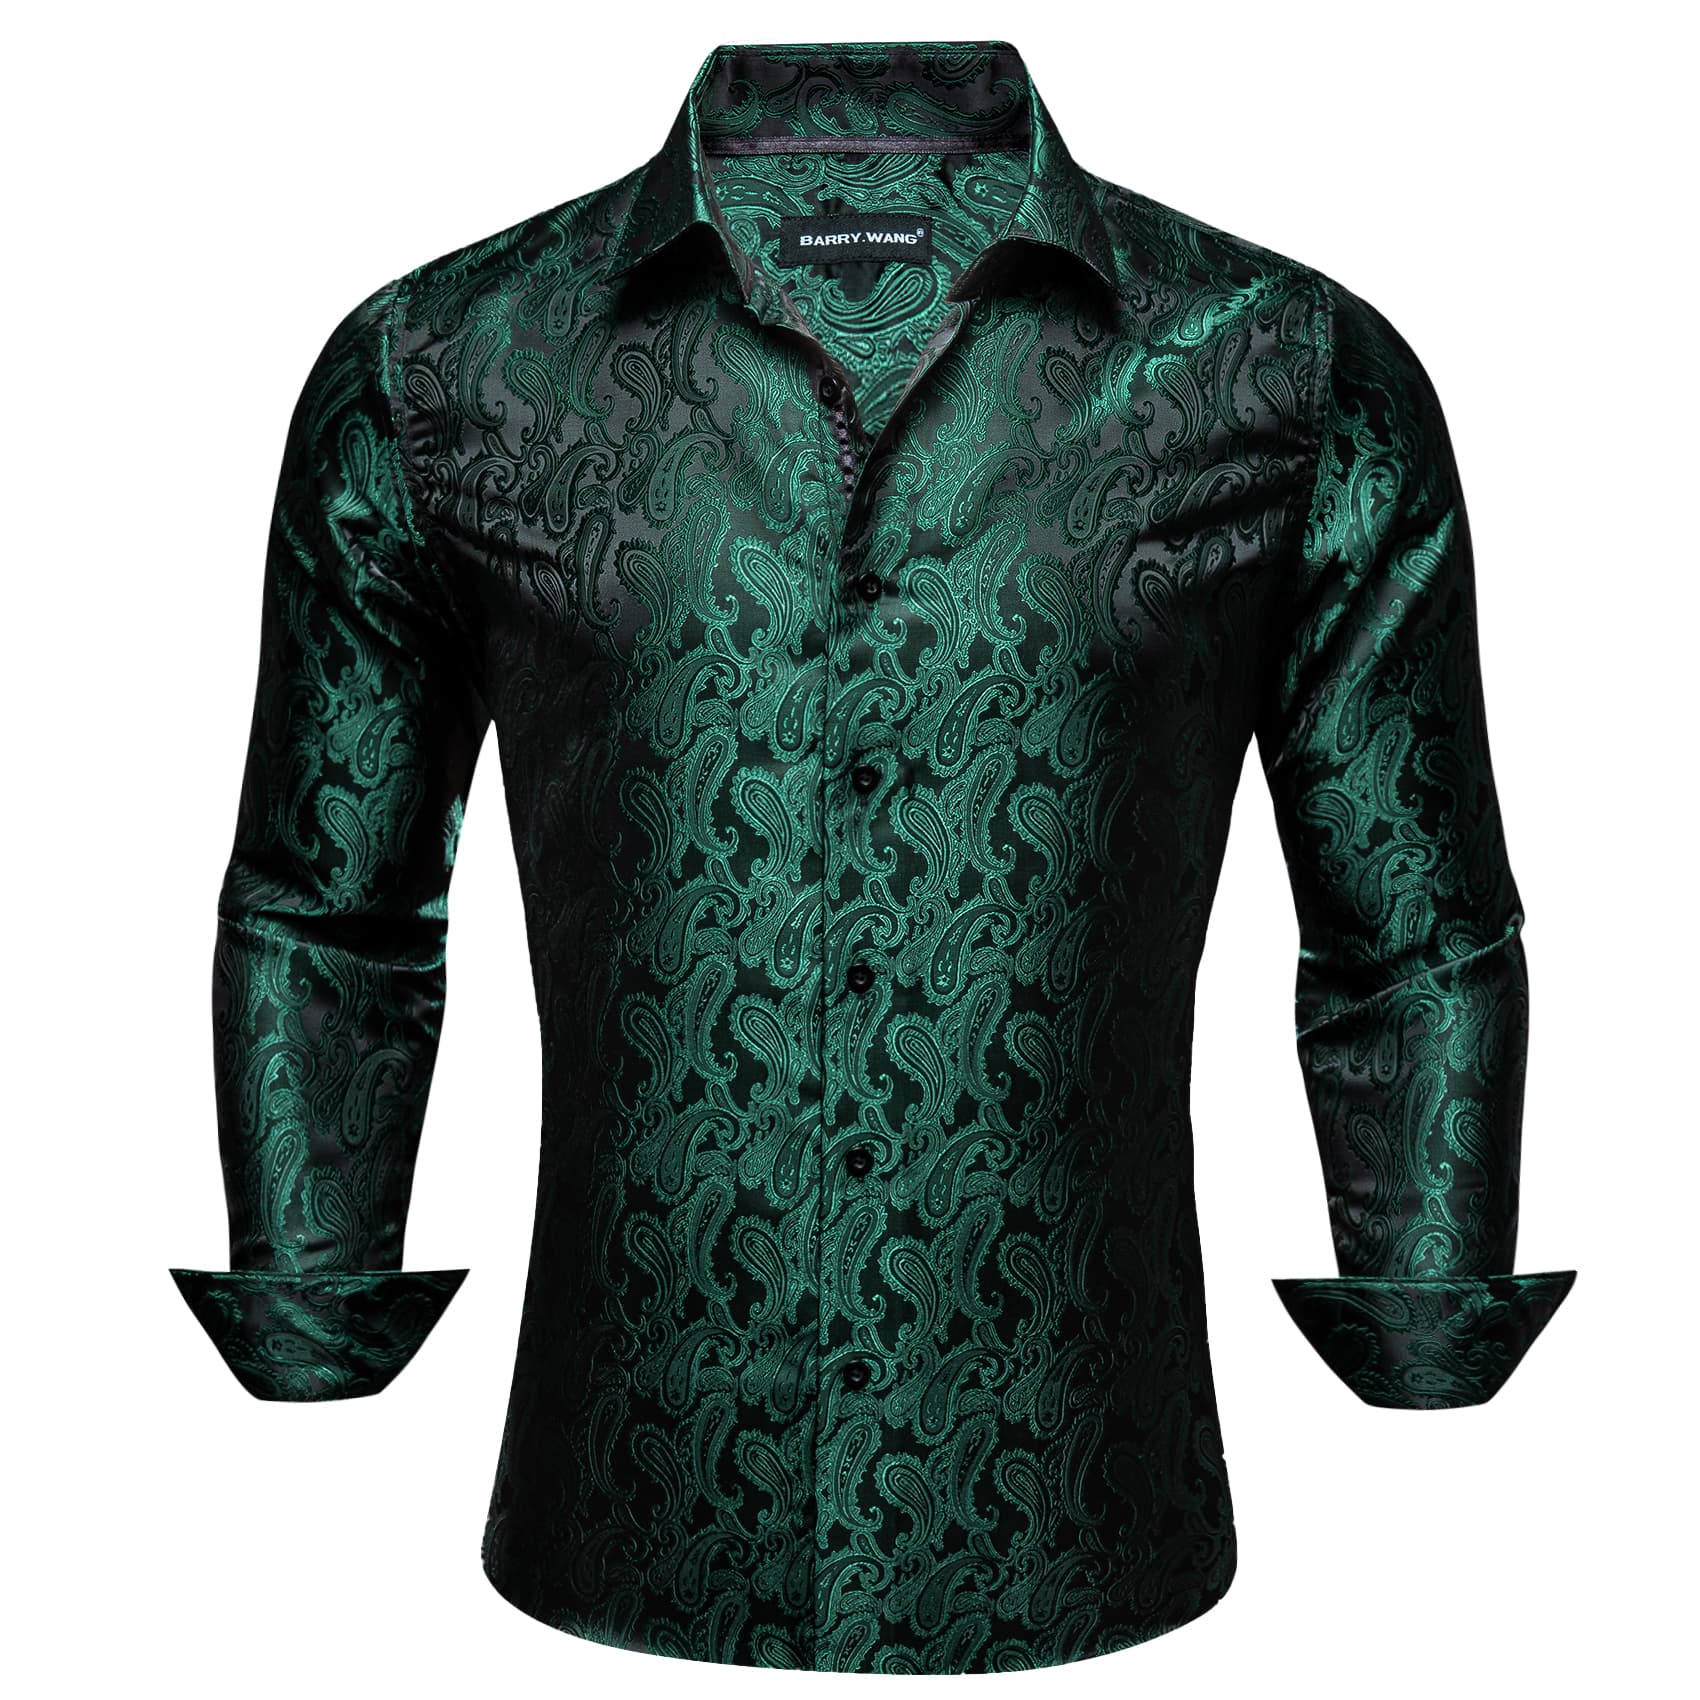  Men's Button Up Shirt Dark Green Paisley Long Sleeve Shirt